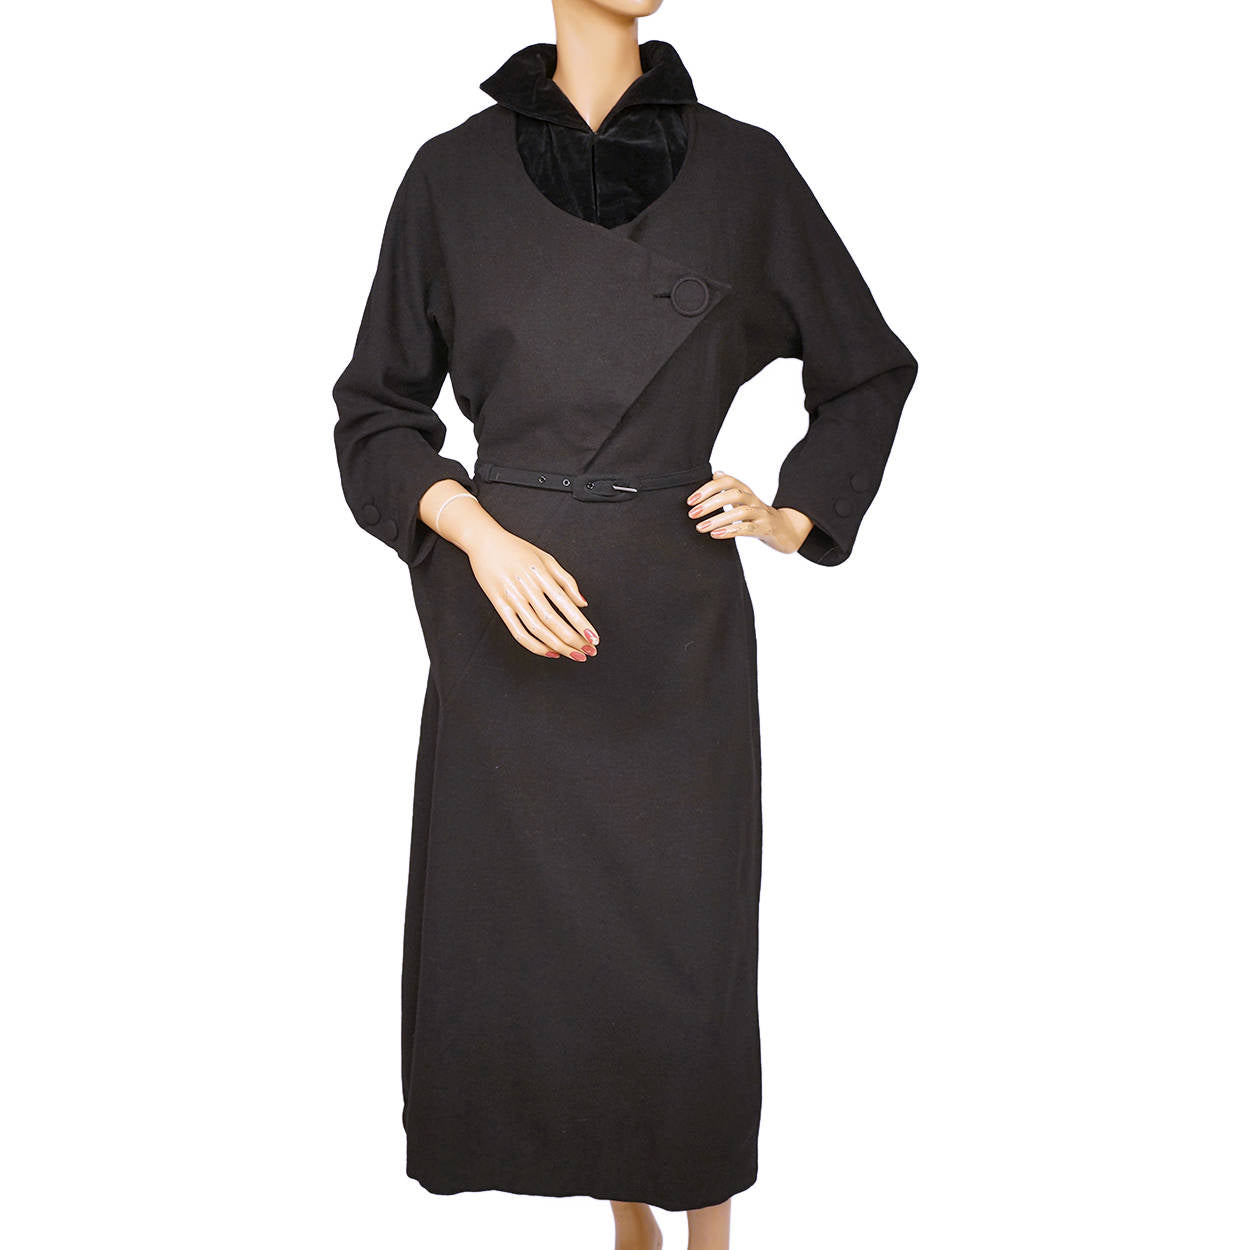 Vintage 1950s Black Dress Full Skirt Wide Belt - Ruby Lane